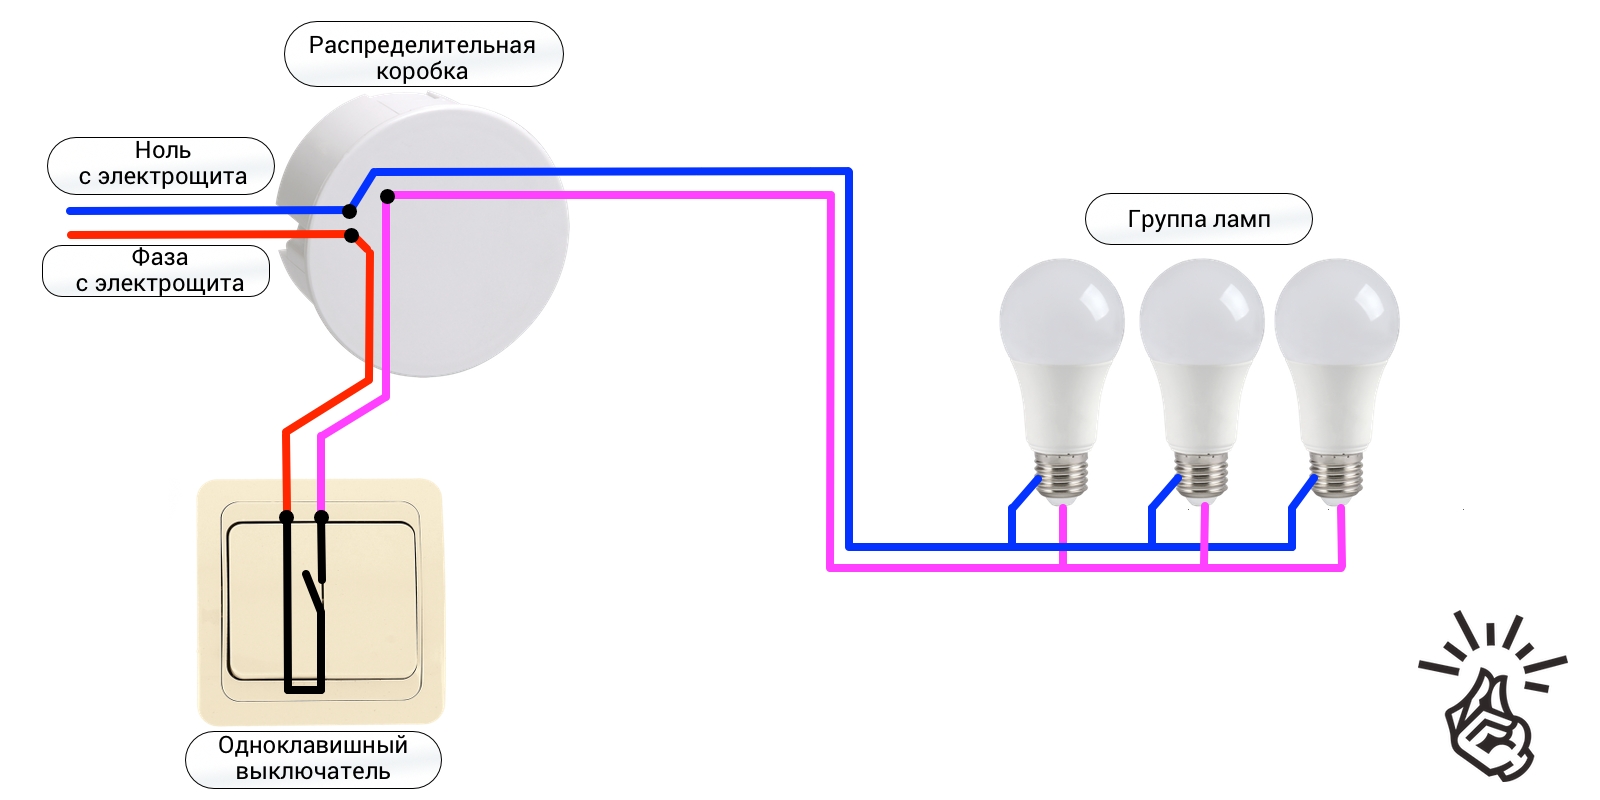 Как подключить выключатель switch. Схема подключения одноклавишного выключателя на две лампочки. Схема подключения одноклавишного выключателя на две лампы. Схема подключения одноклавишного выключателя к лампе. Схема подключения выключателя одноклавишного к 2 лампочкам.